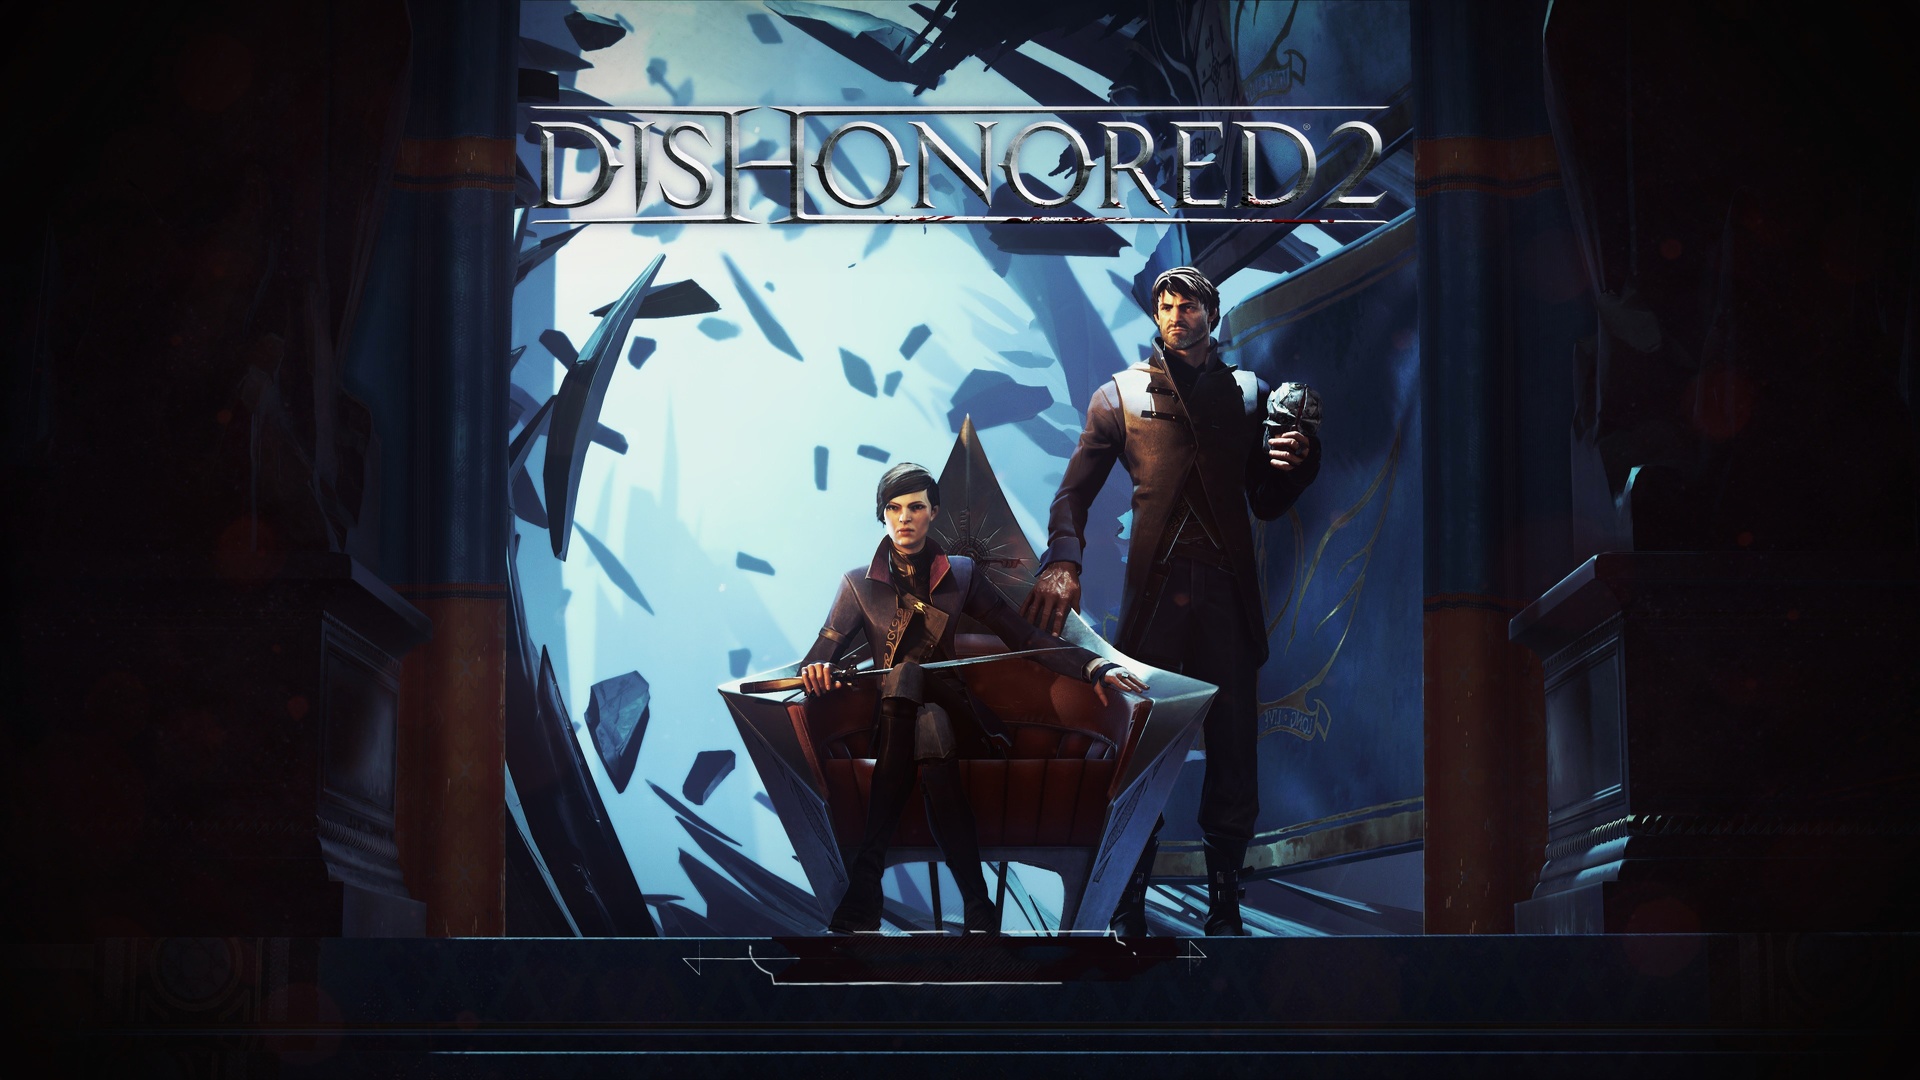 Dishonored 2.jpg